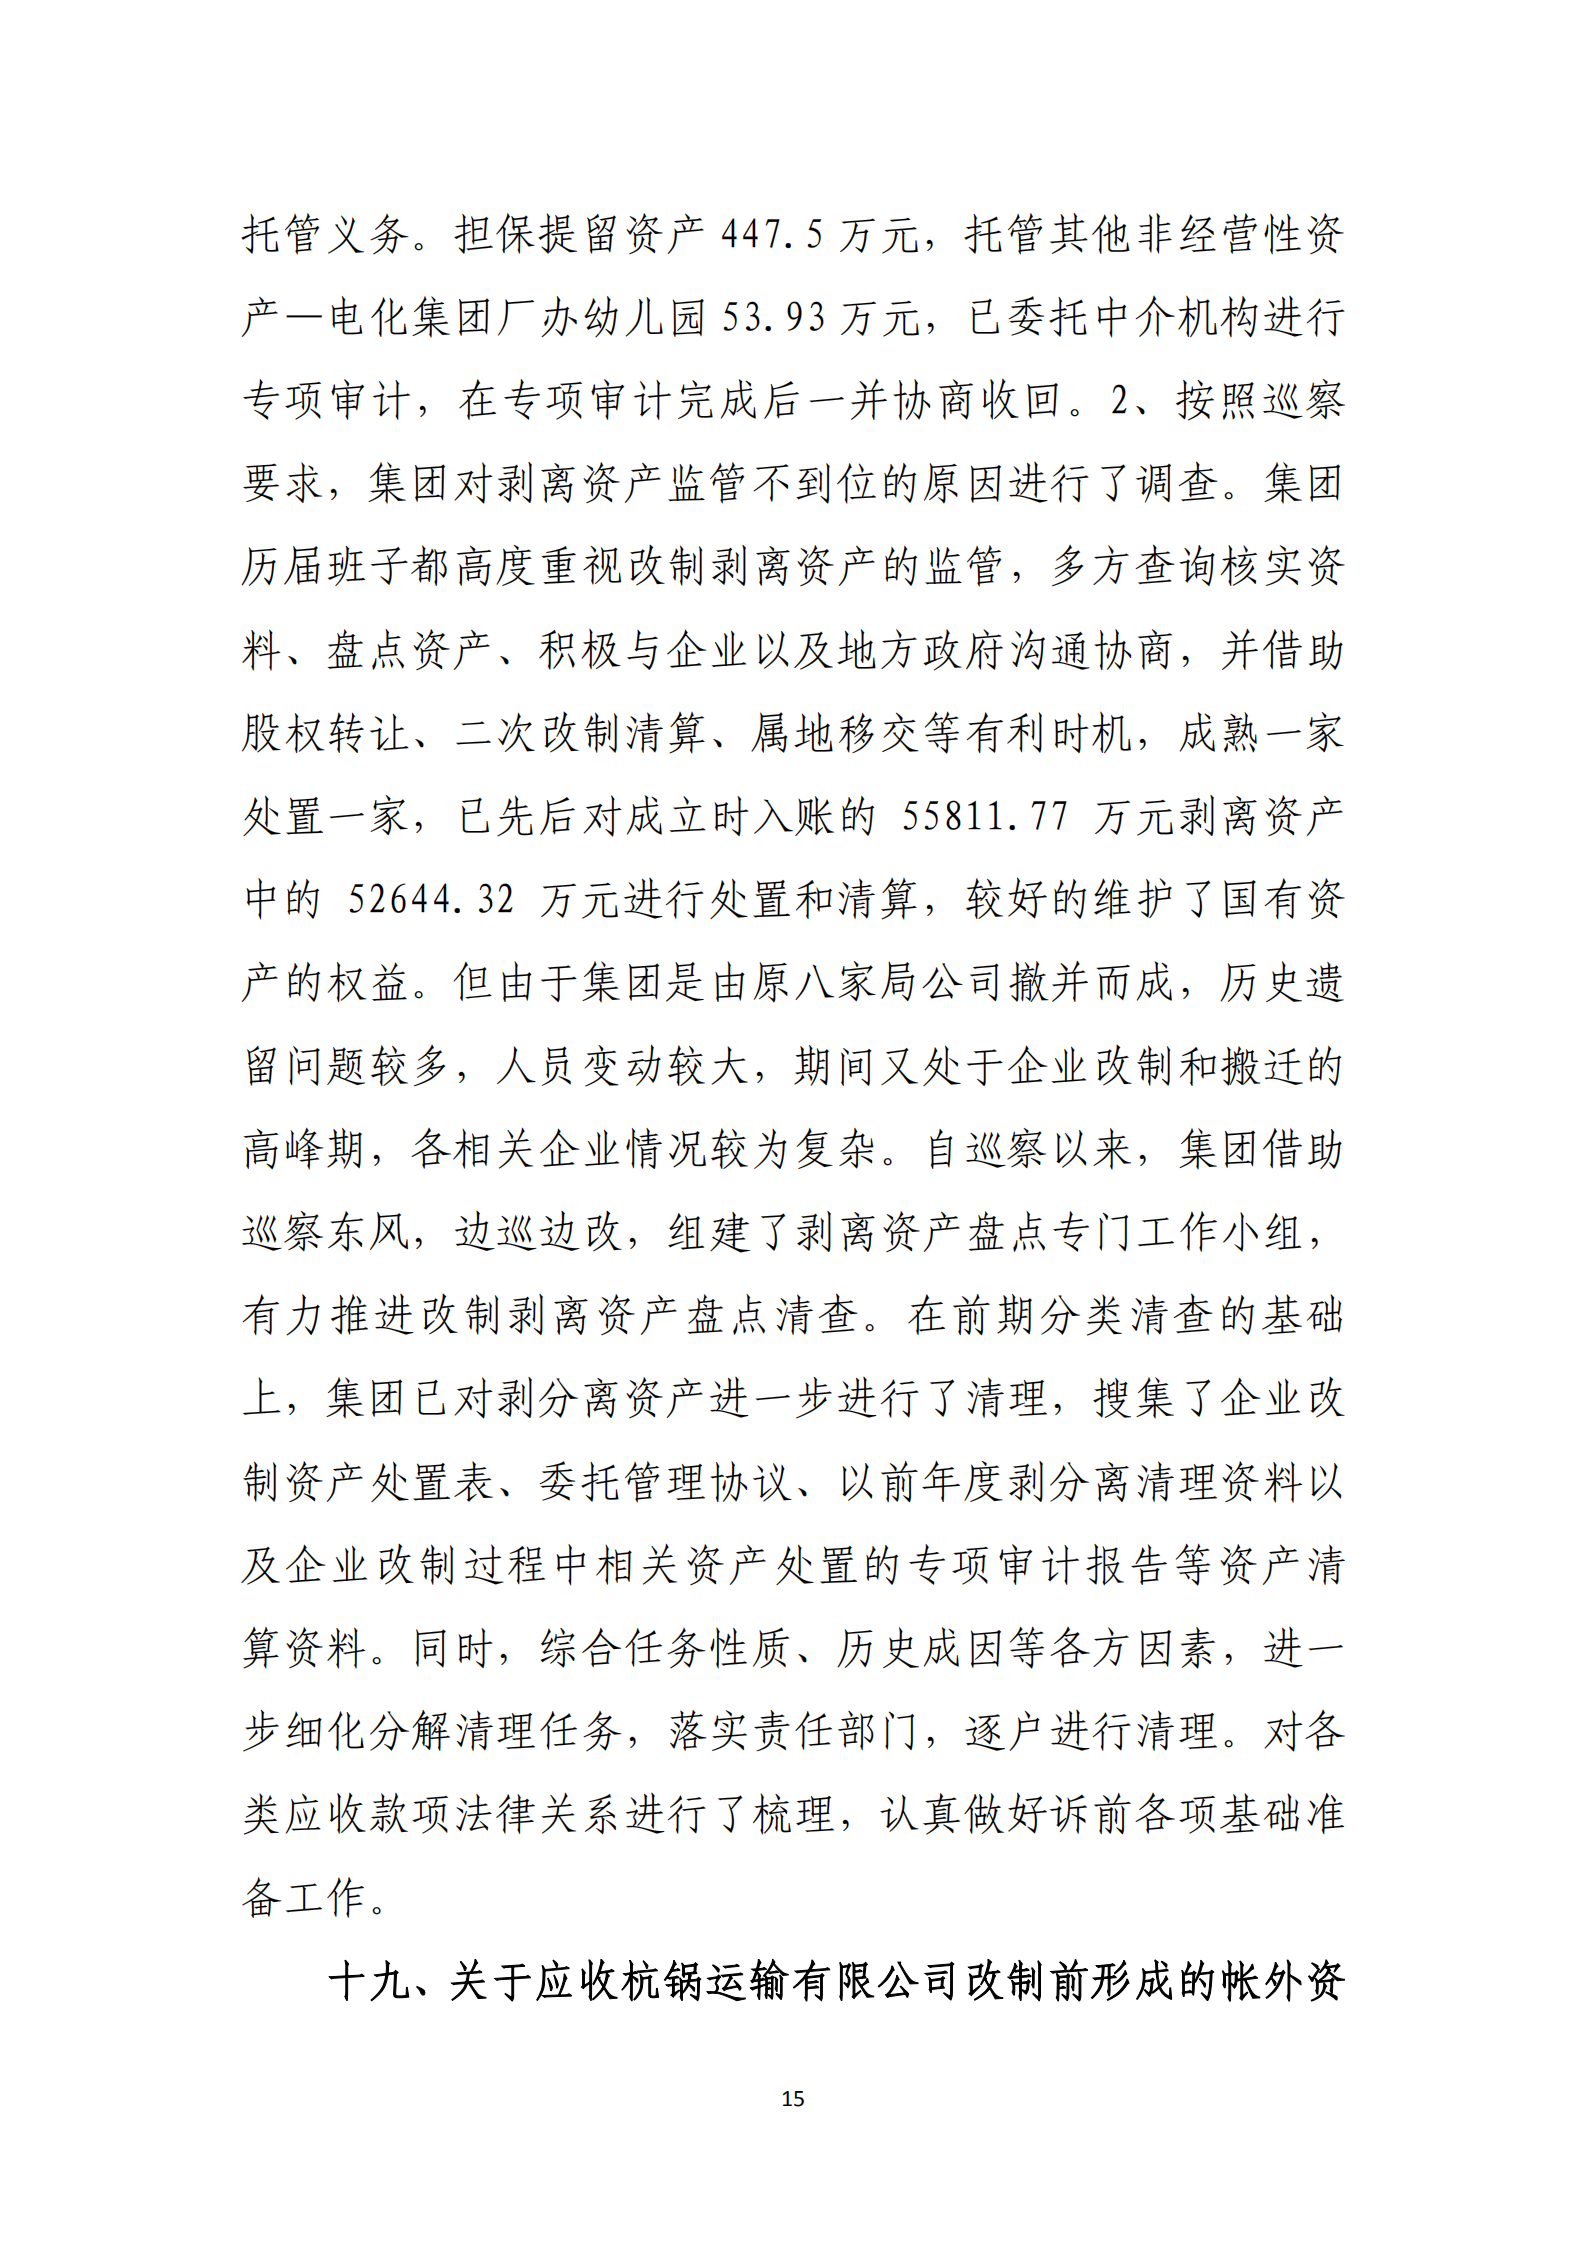 乐虎国际游戏官网党委关于巡察整改情况的通报_14.png